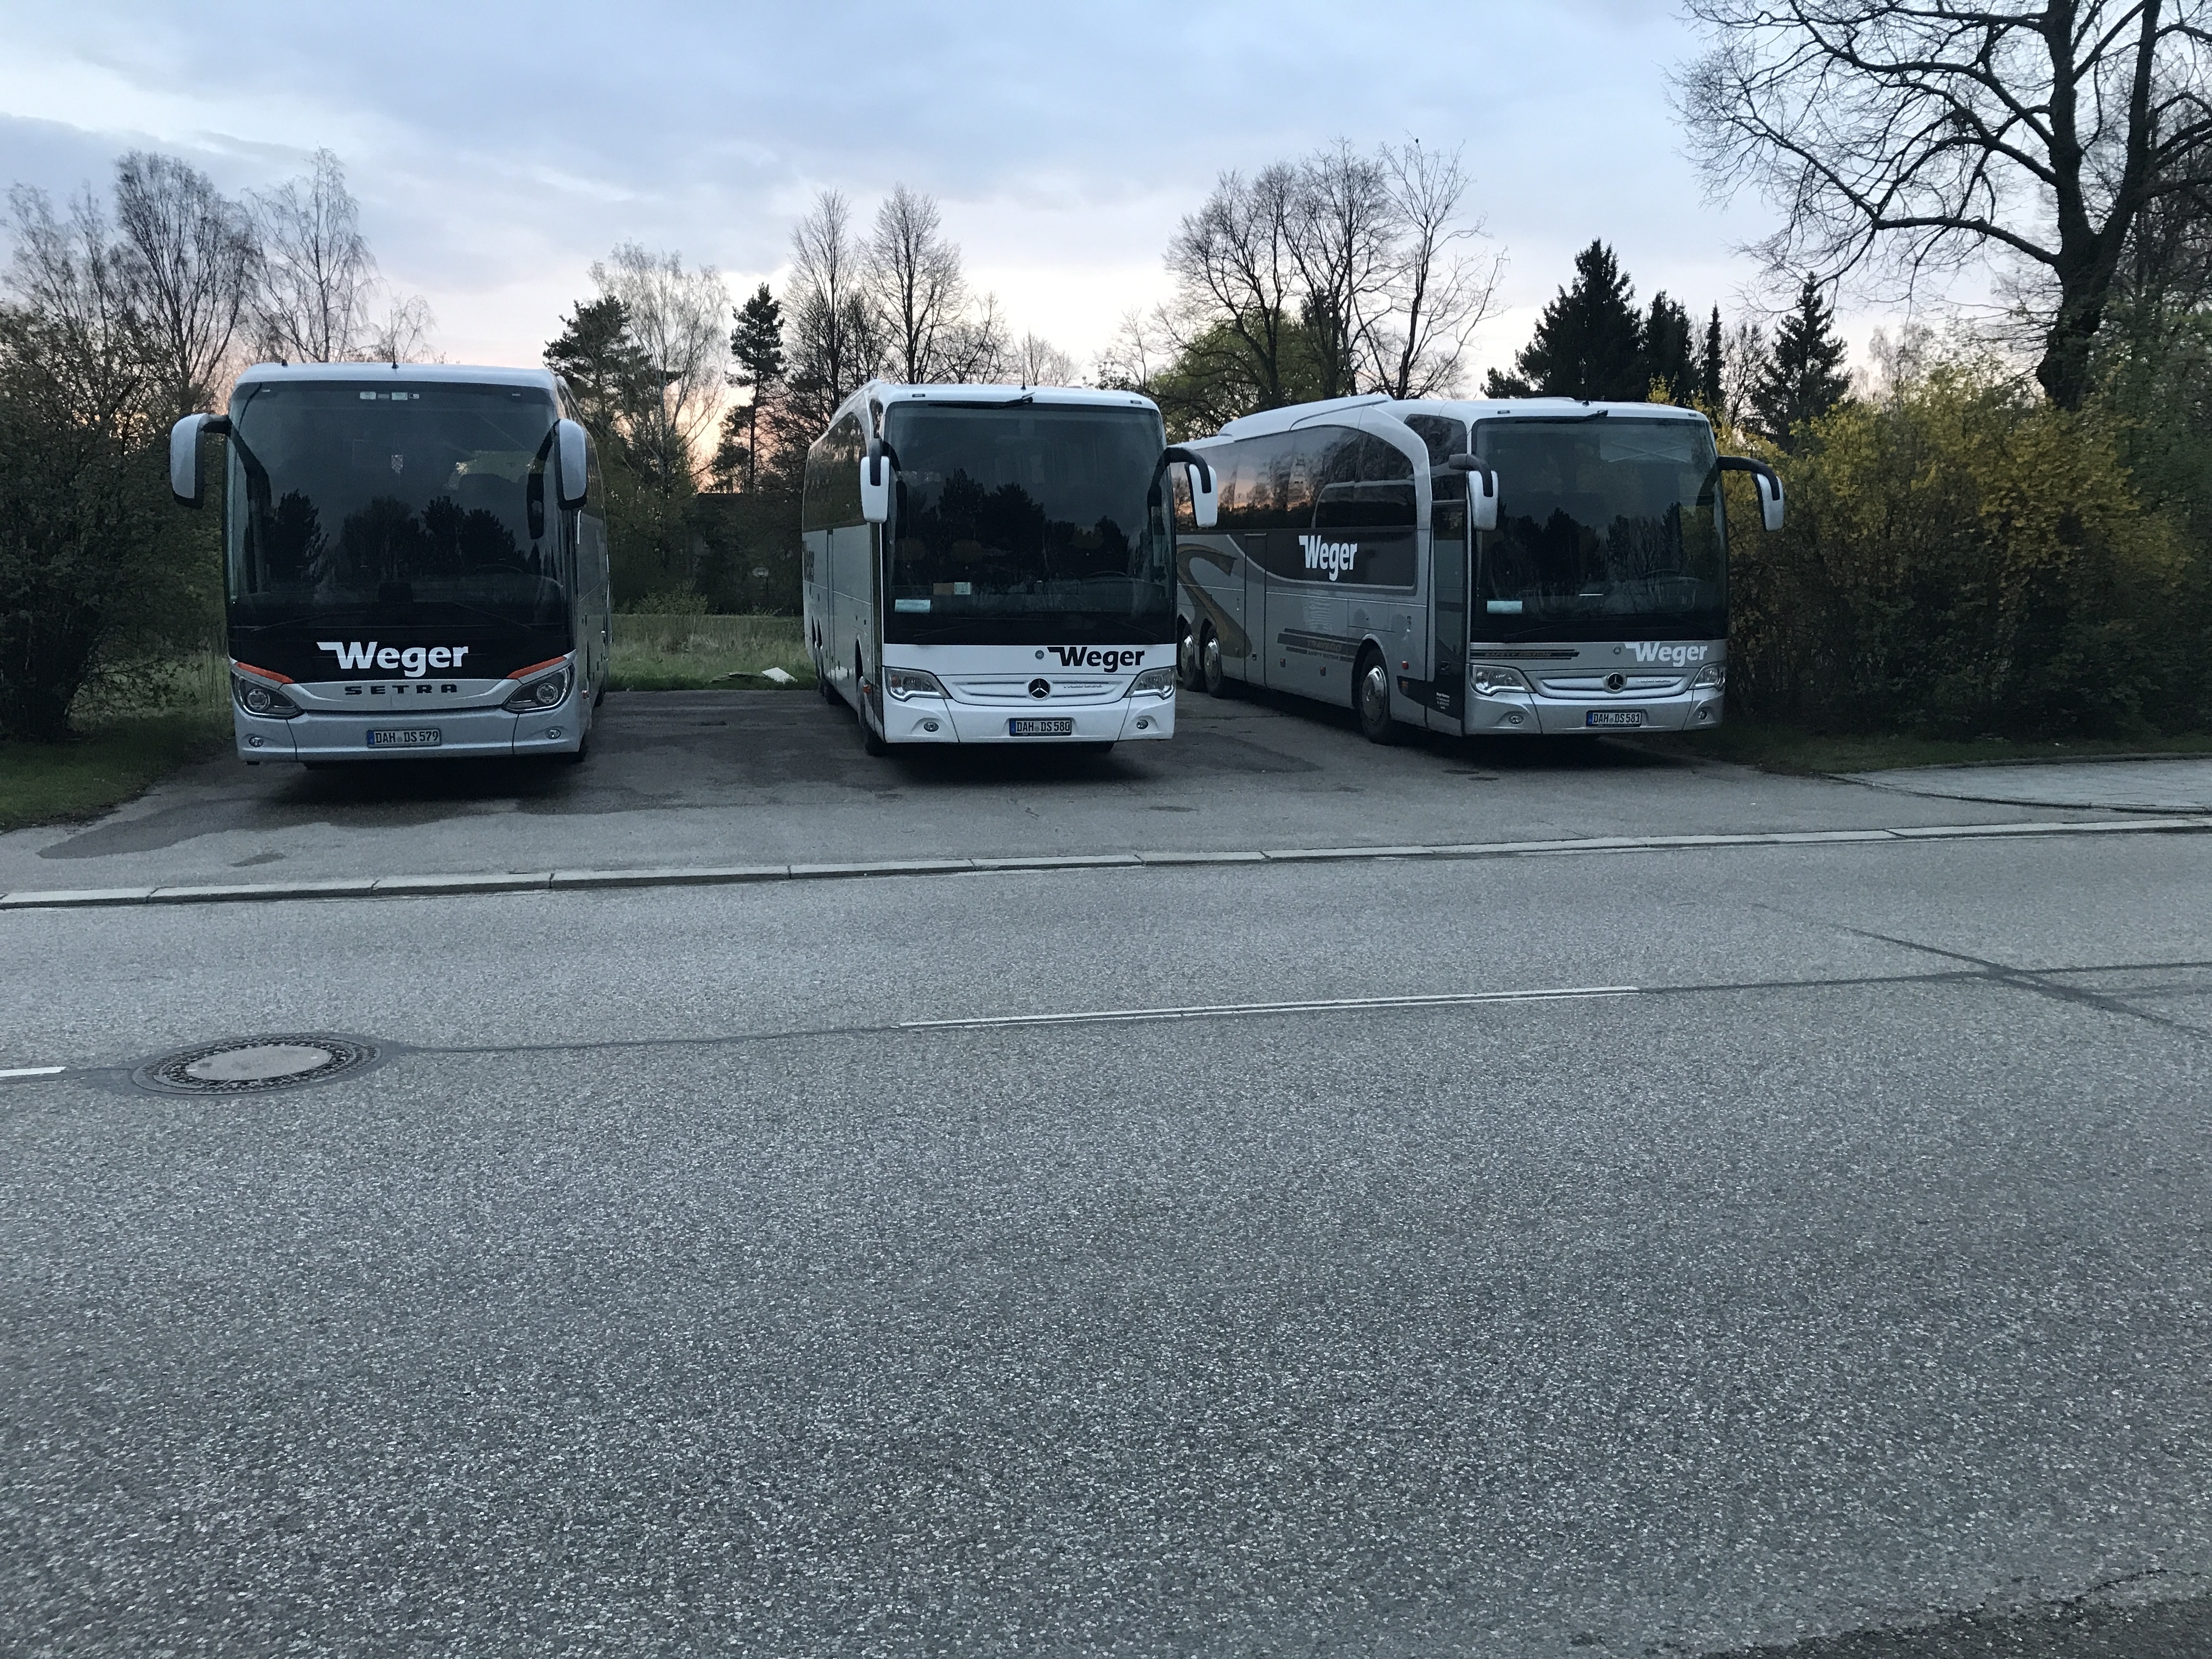 Bild der Weger Reisen e.K. - Ihr Busunternehmen für München, Augsburg und Dachau